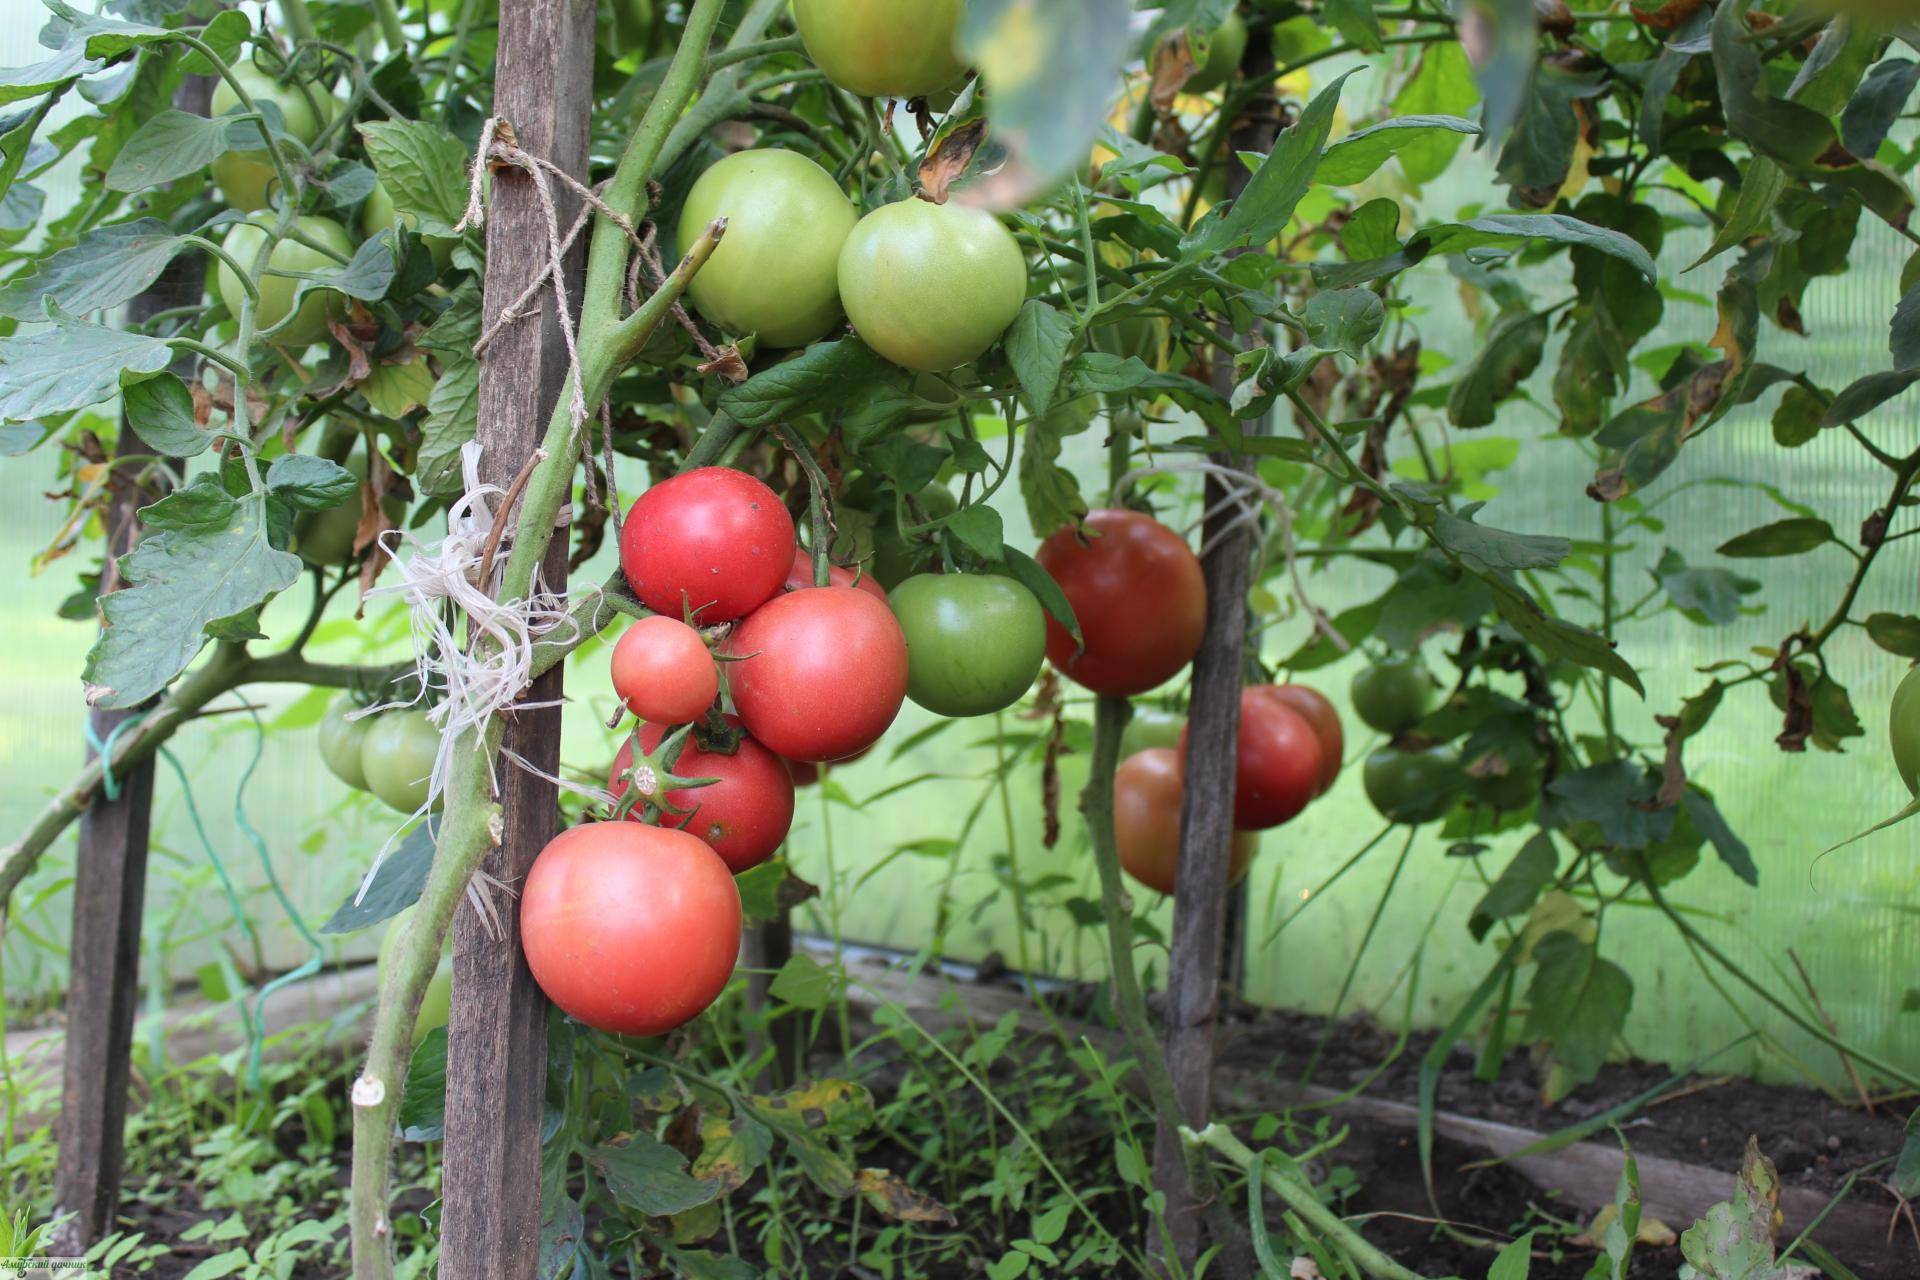 Ранний сорт с обилием питательных веществ — томат розовая мечта: полное описание помидоров